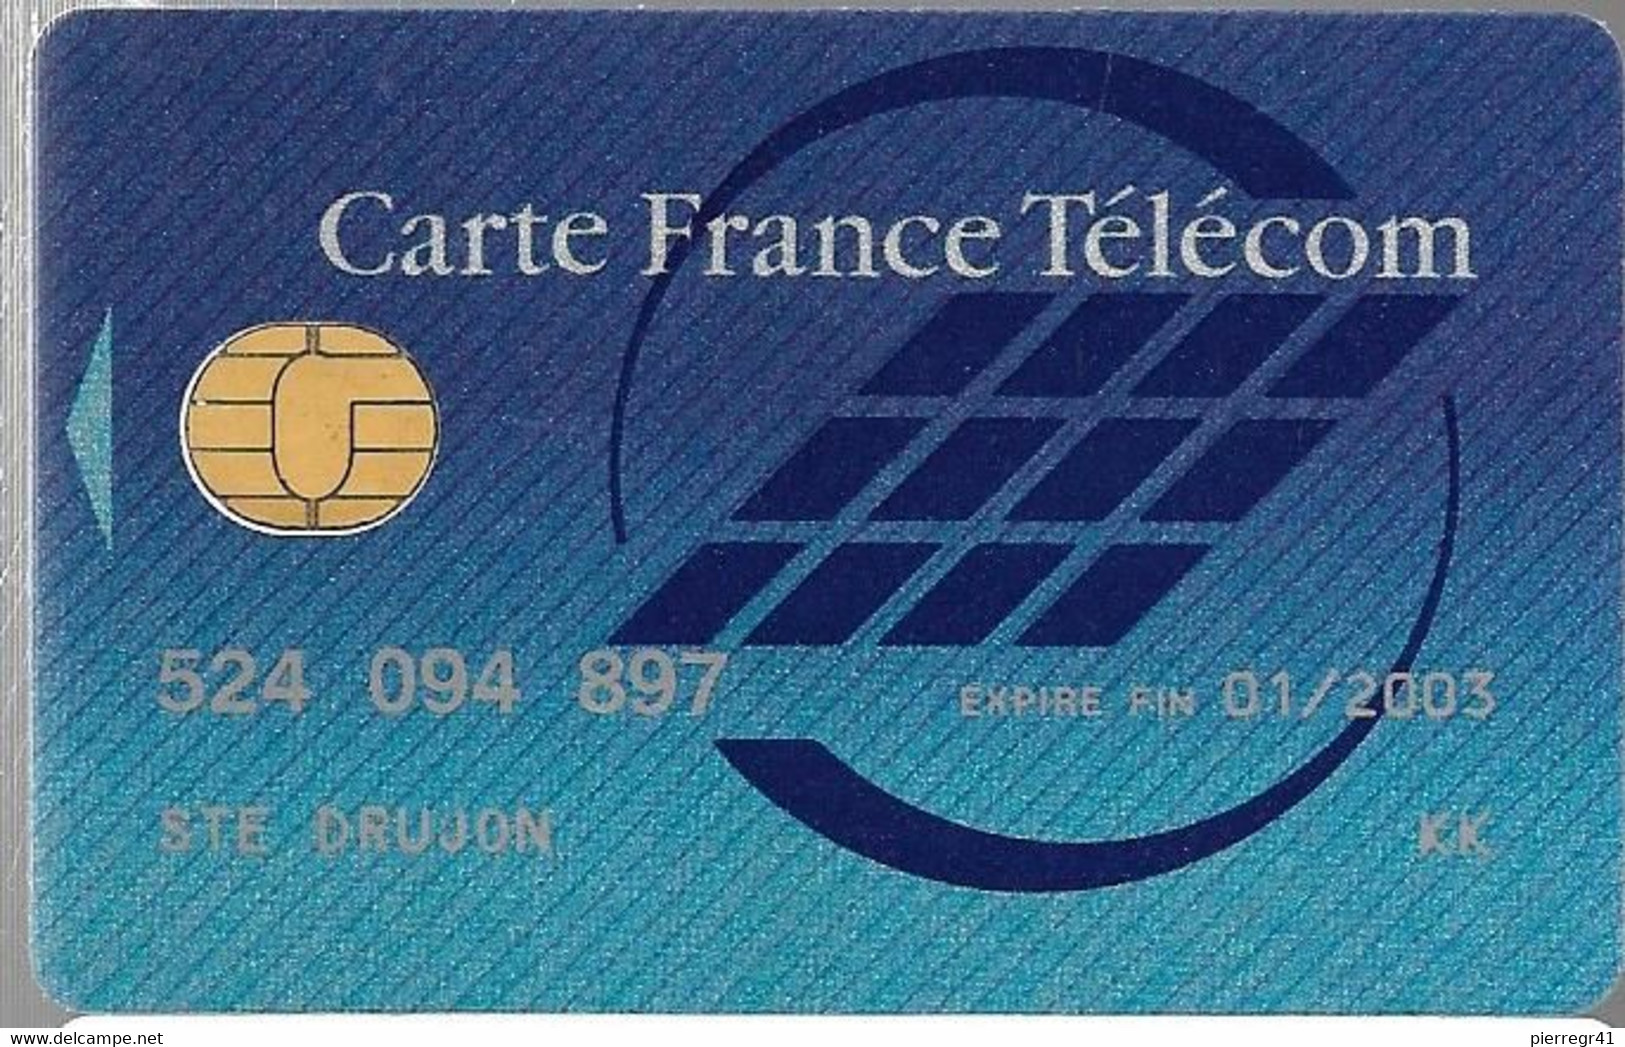 1-CARTE FRANCE TELECOM-PUCE SOL C-NATIONALE-Exp01/2003-TBE -  Cartes Pastel   